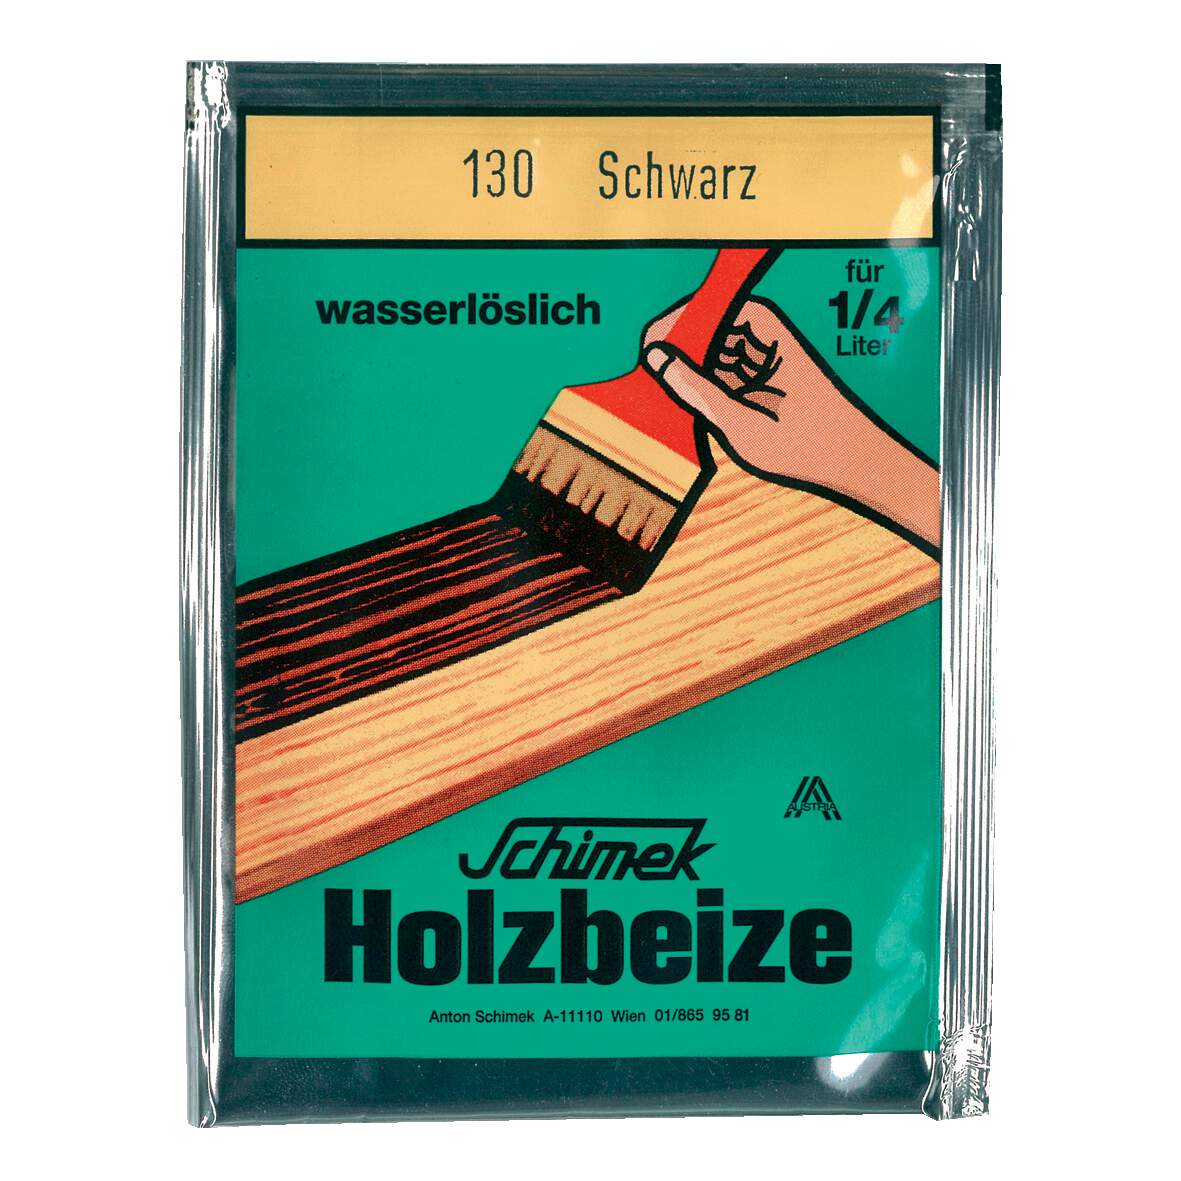 1216647 - Holzbeize wasserlöslich